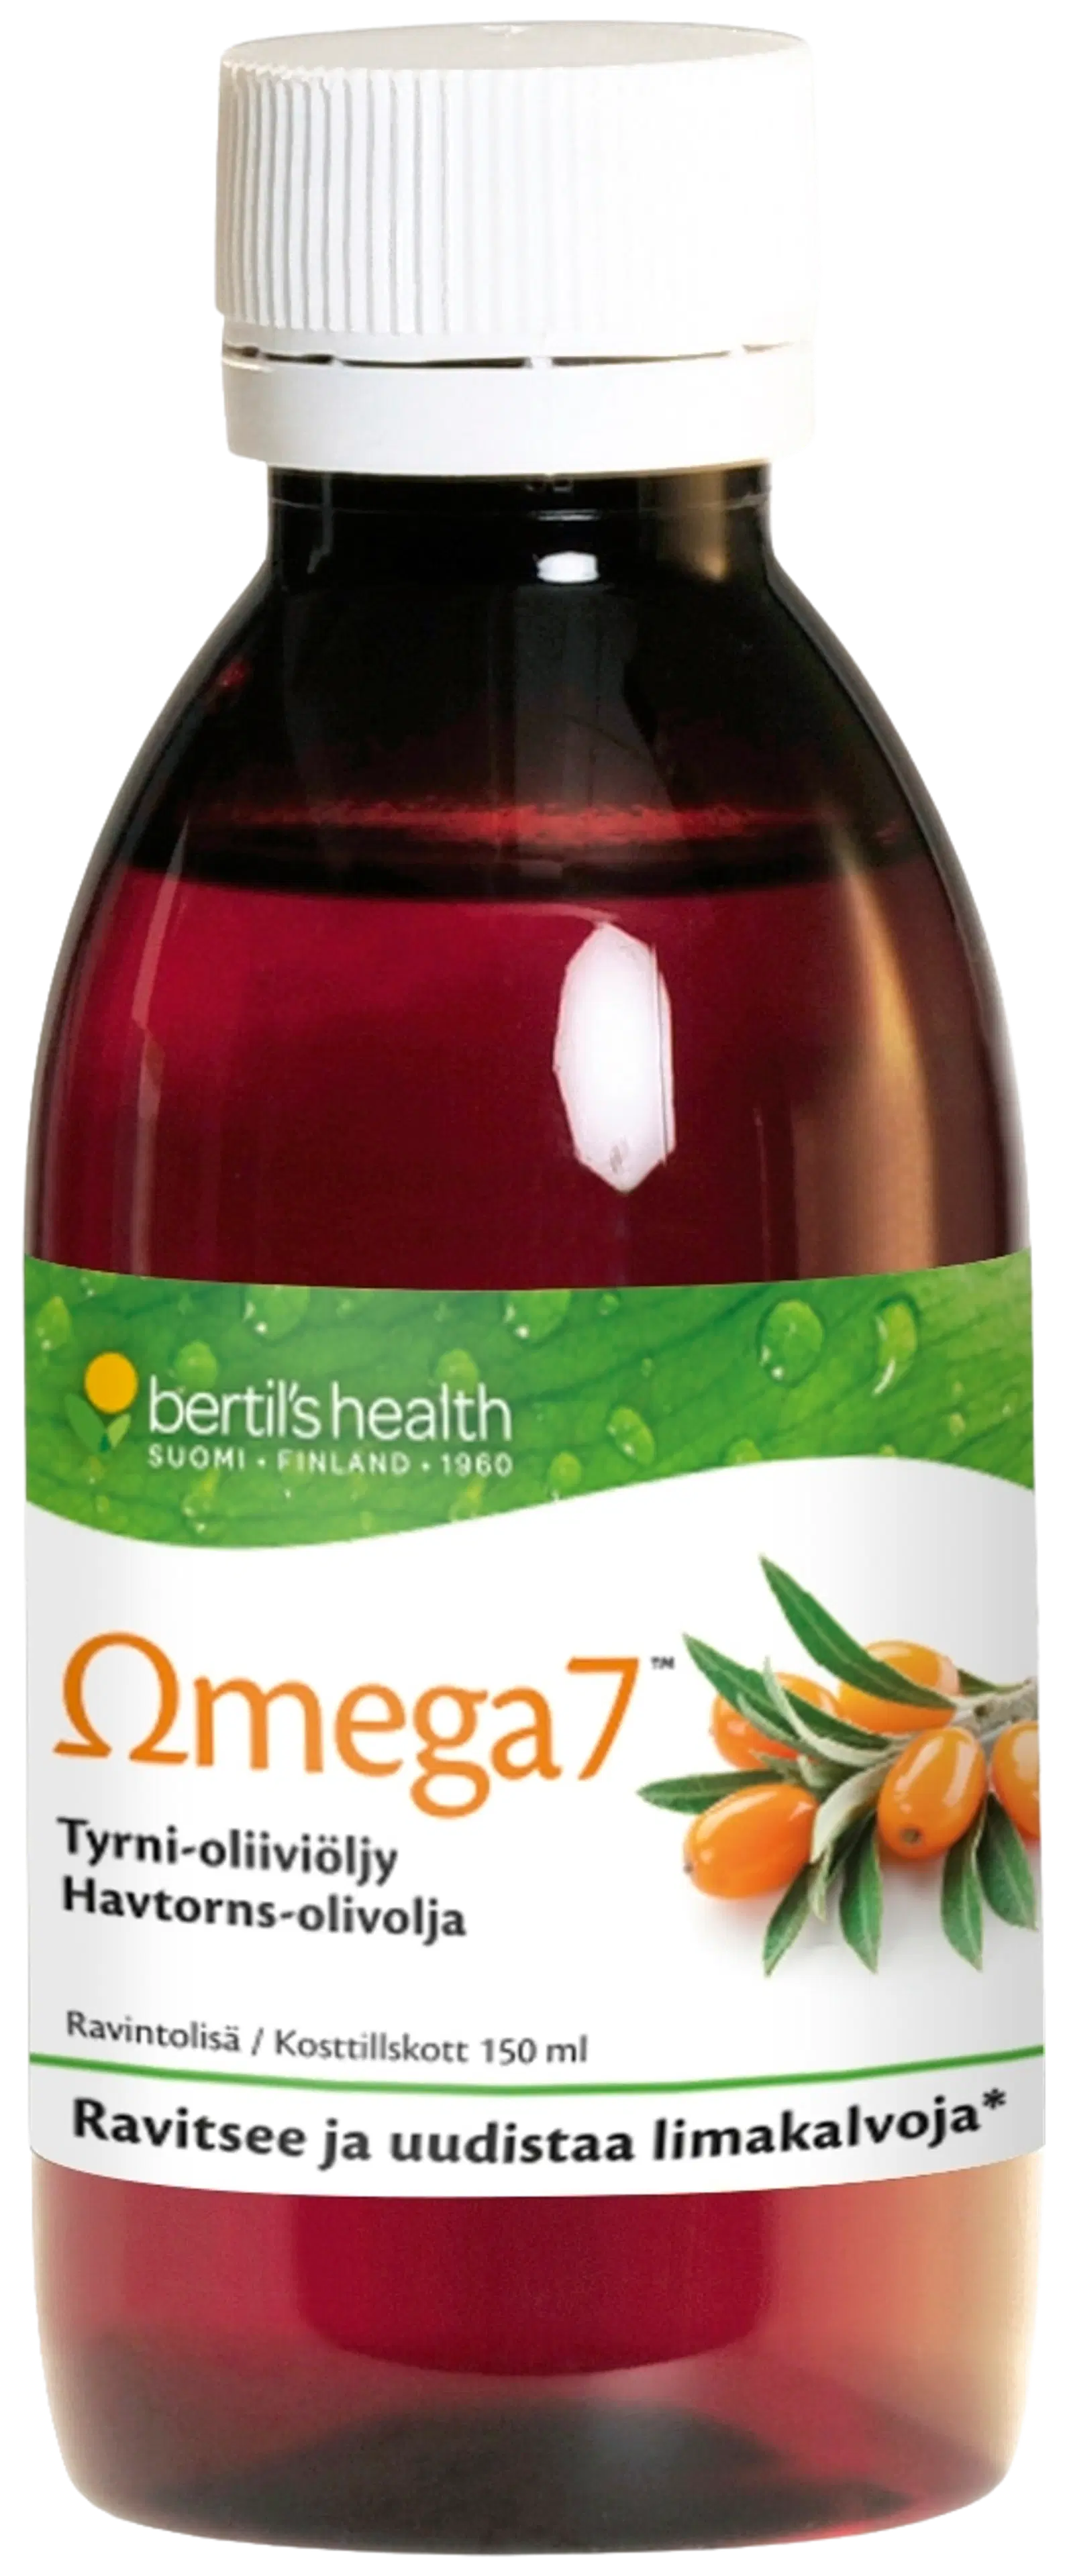 Omega7 Tyrni-oliiviöljy ravintolisä 150 ml